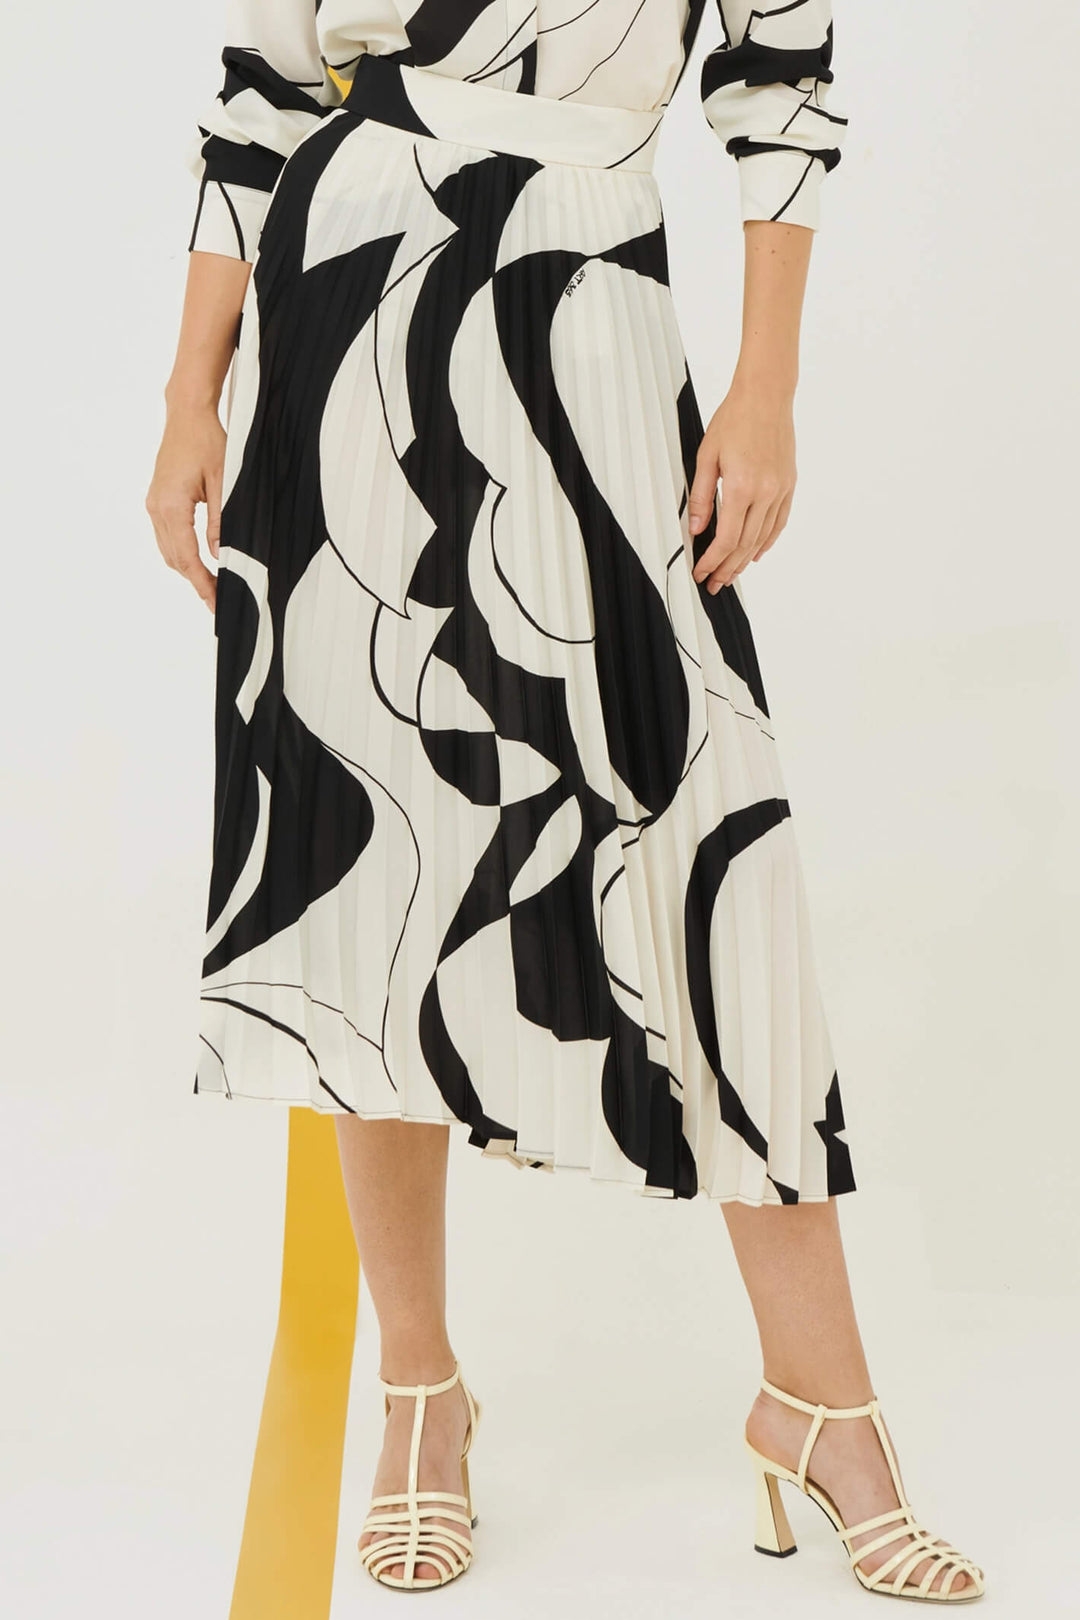 Marella Svago 2331010233200 Black Print Pleated Skirt - Olivia Grace Fashion